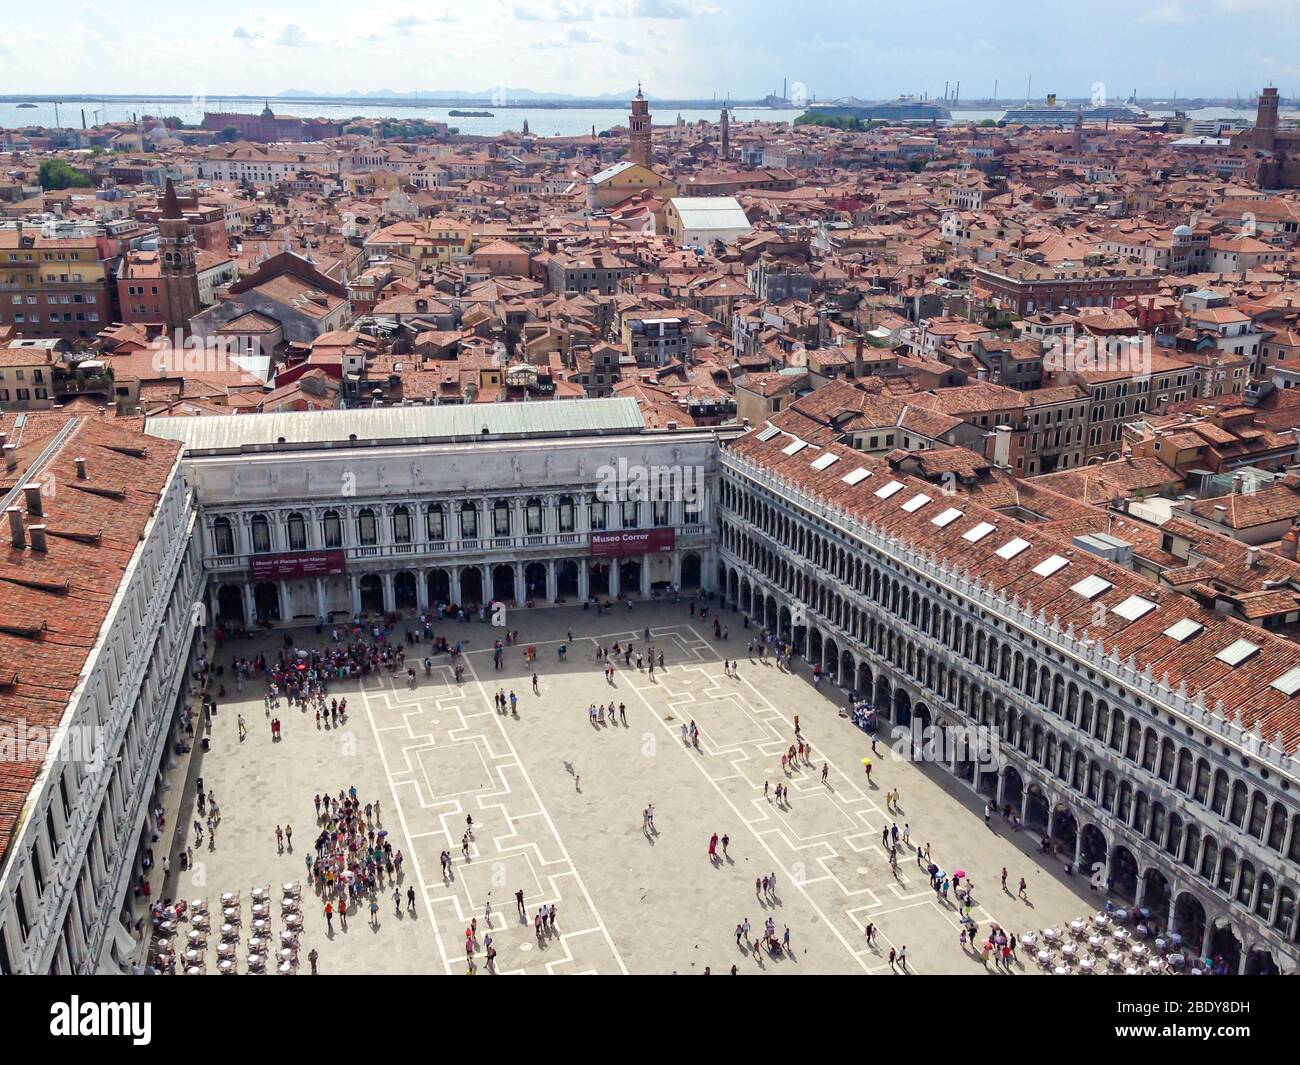 Aerial view of Venice, Piazza San Marco in Venice, Italy. San Giorgio di Maggiore church in the background. Stock Photo